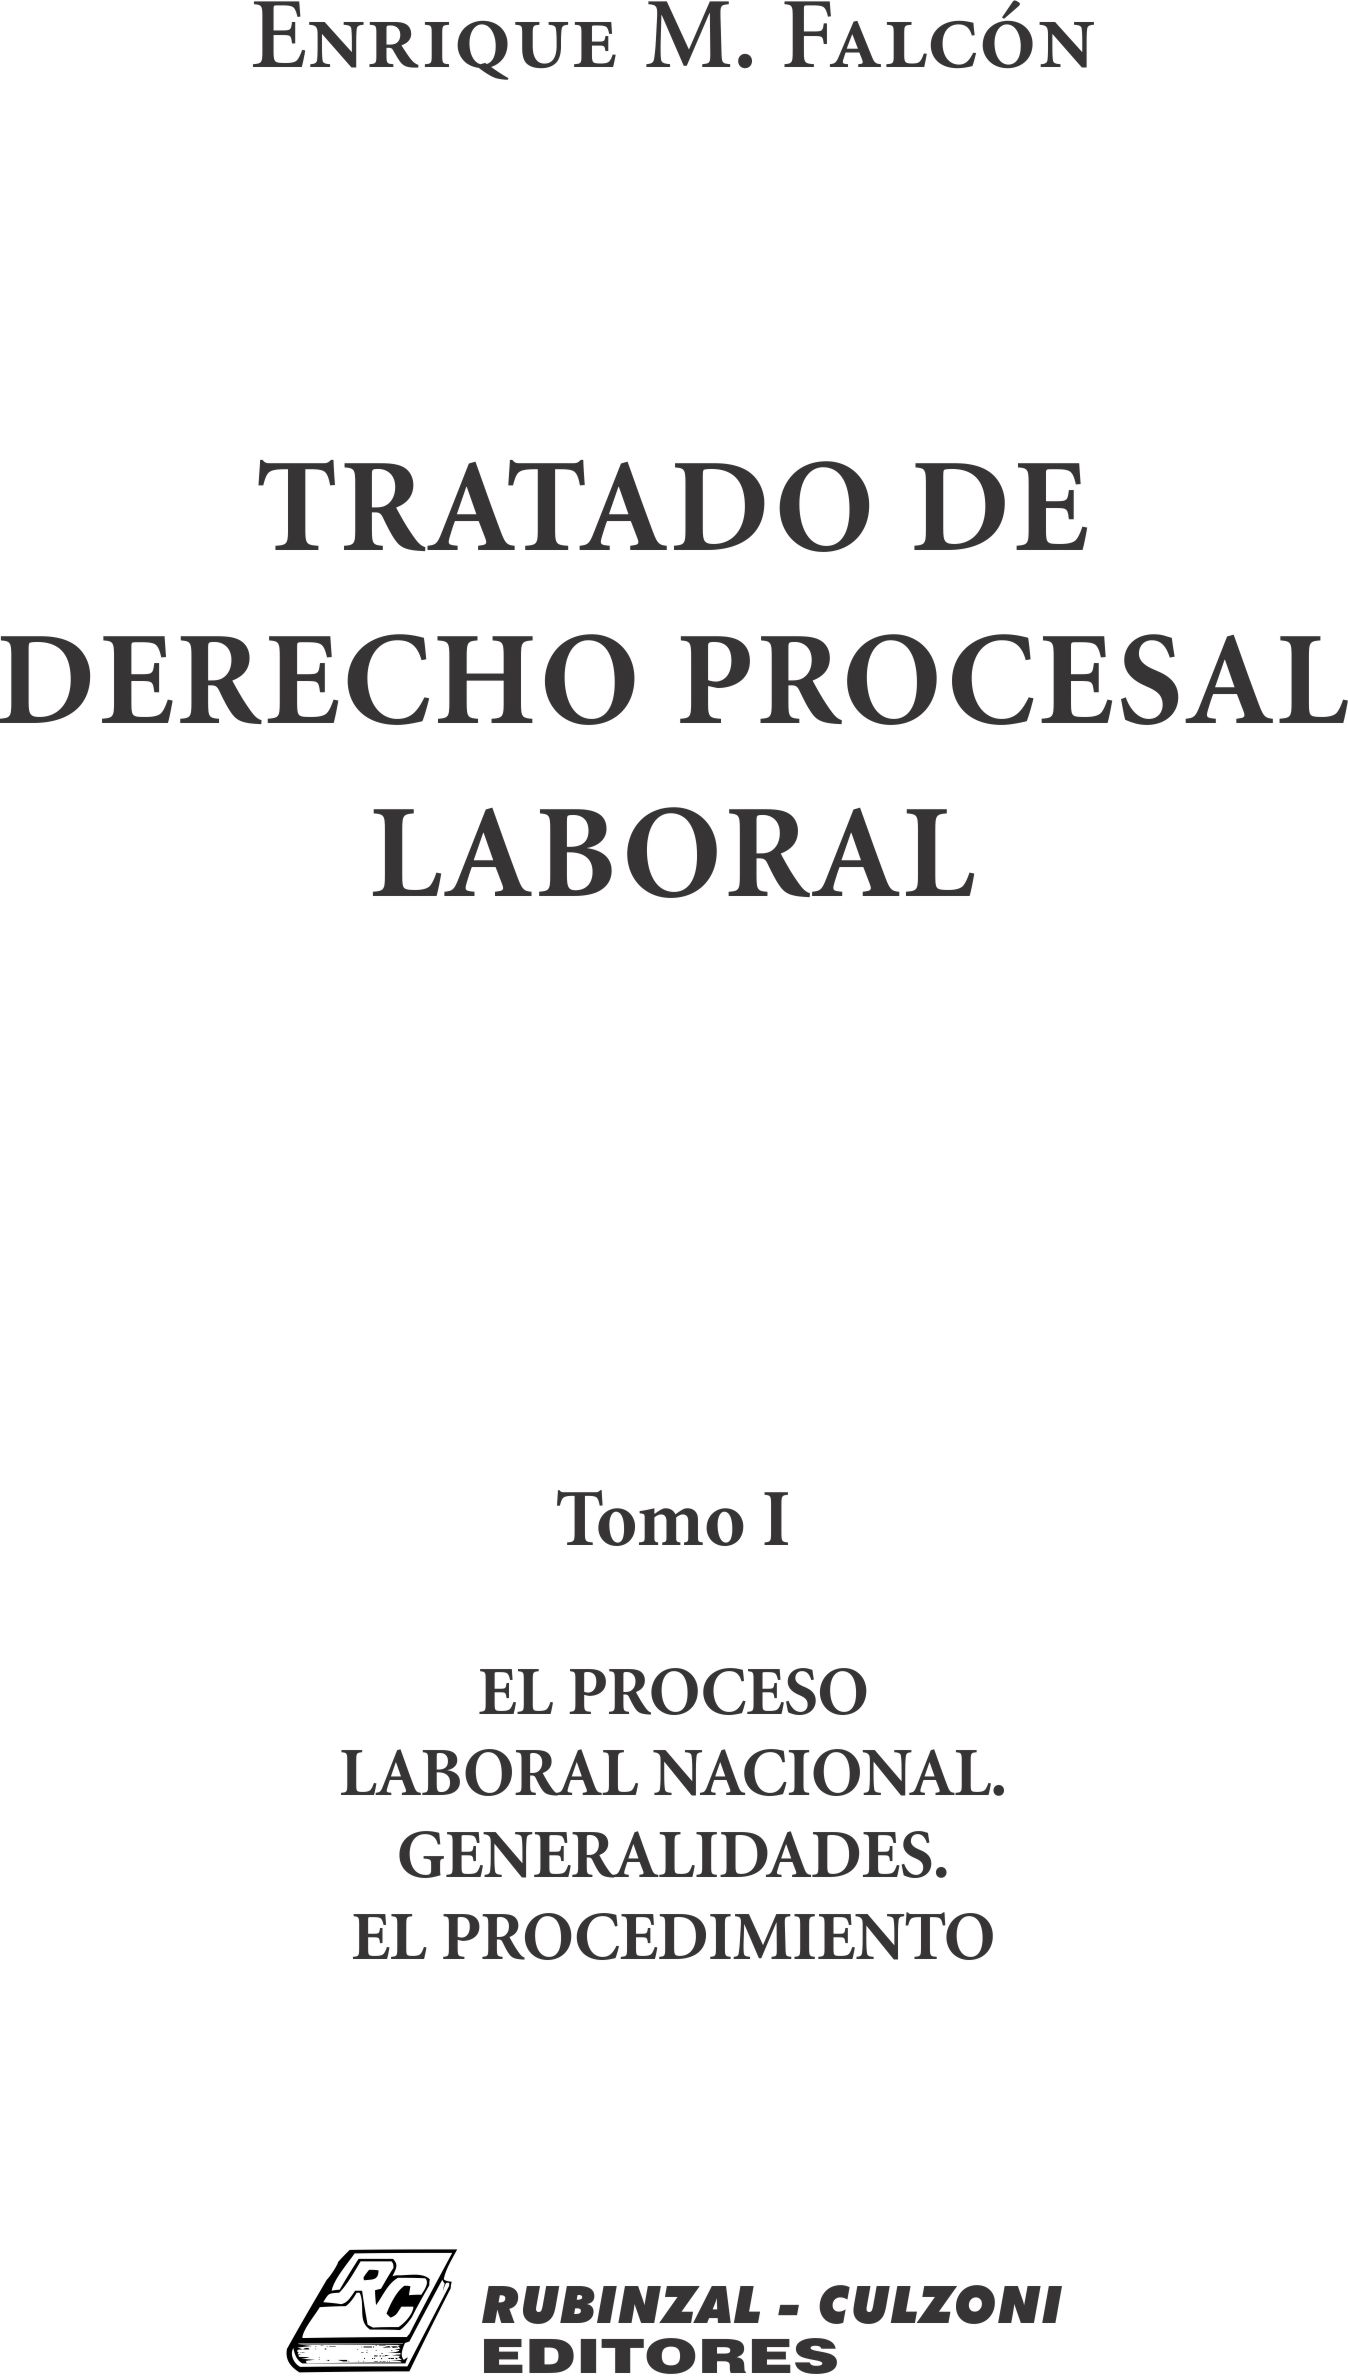 Tratado de Derecho Procesal Laboral. - Tomo I. El proceso laboral nacional. Generalidades. El procedimiento.